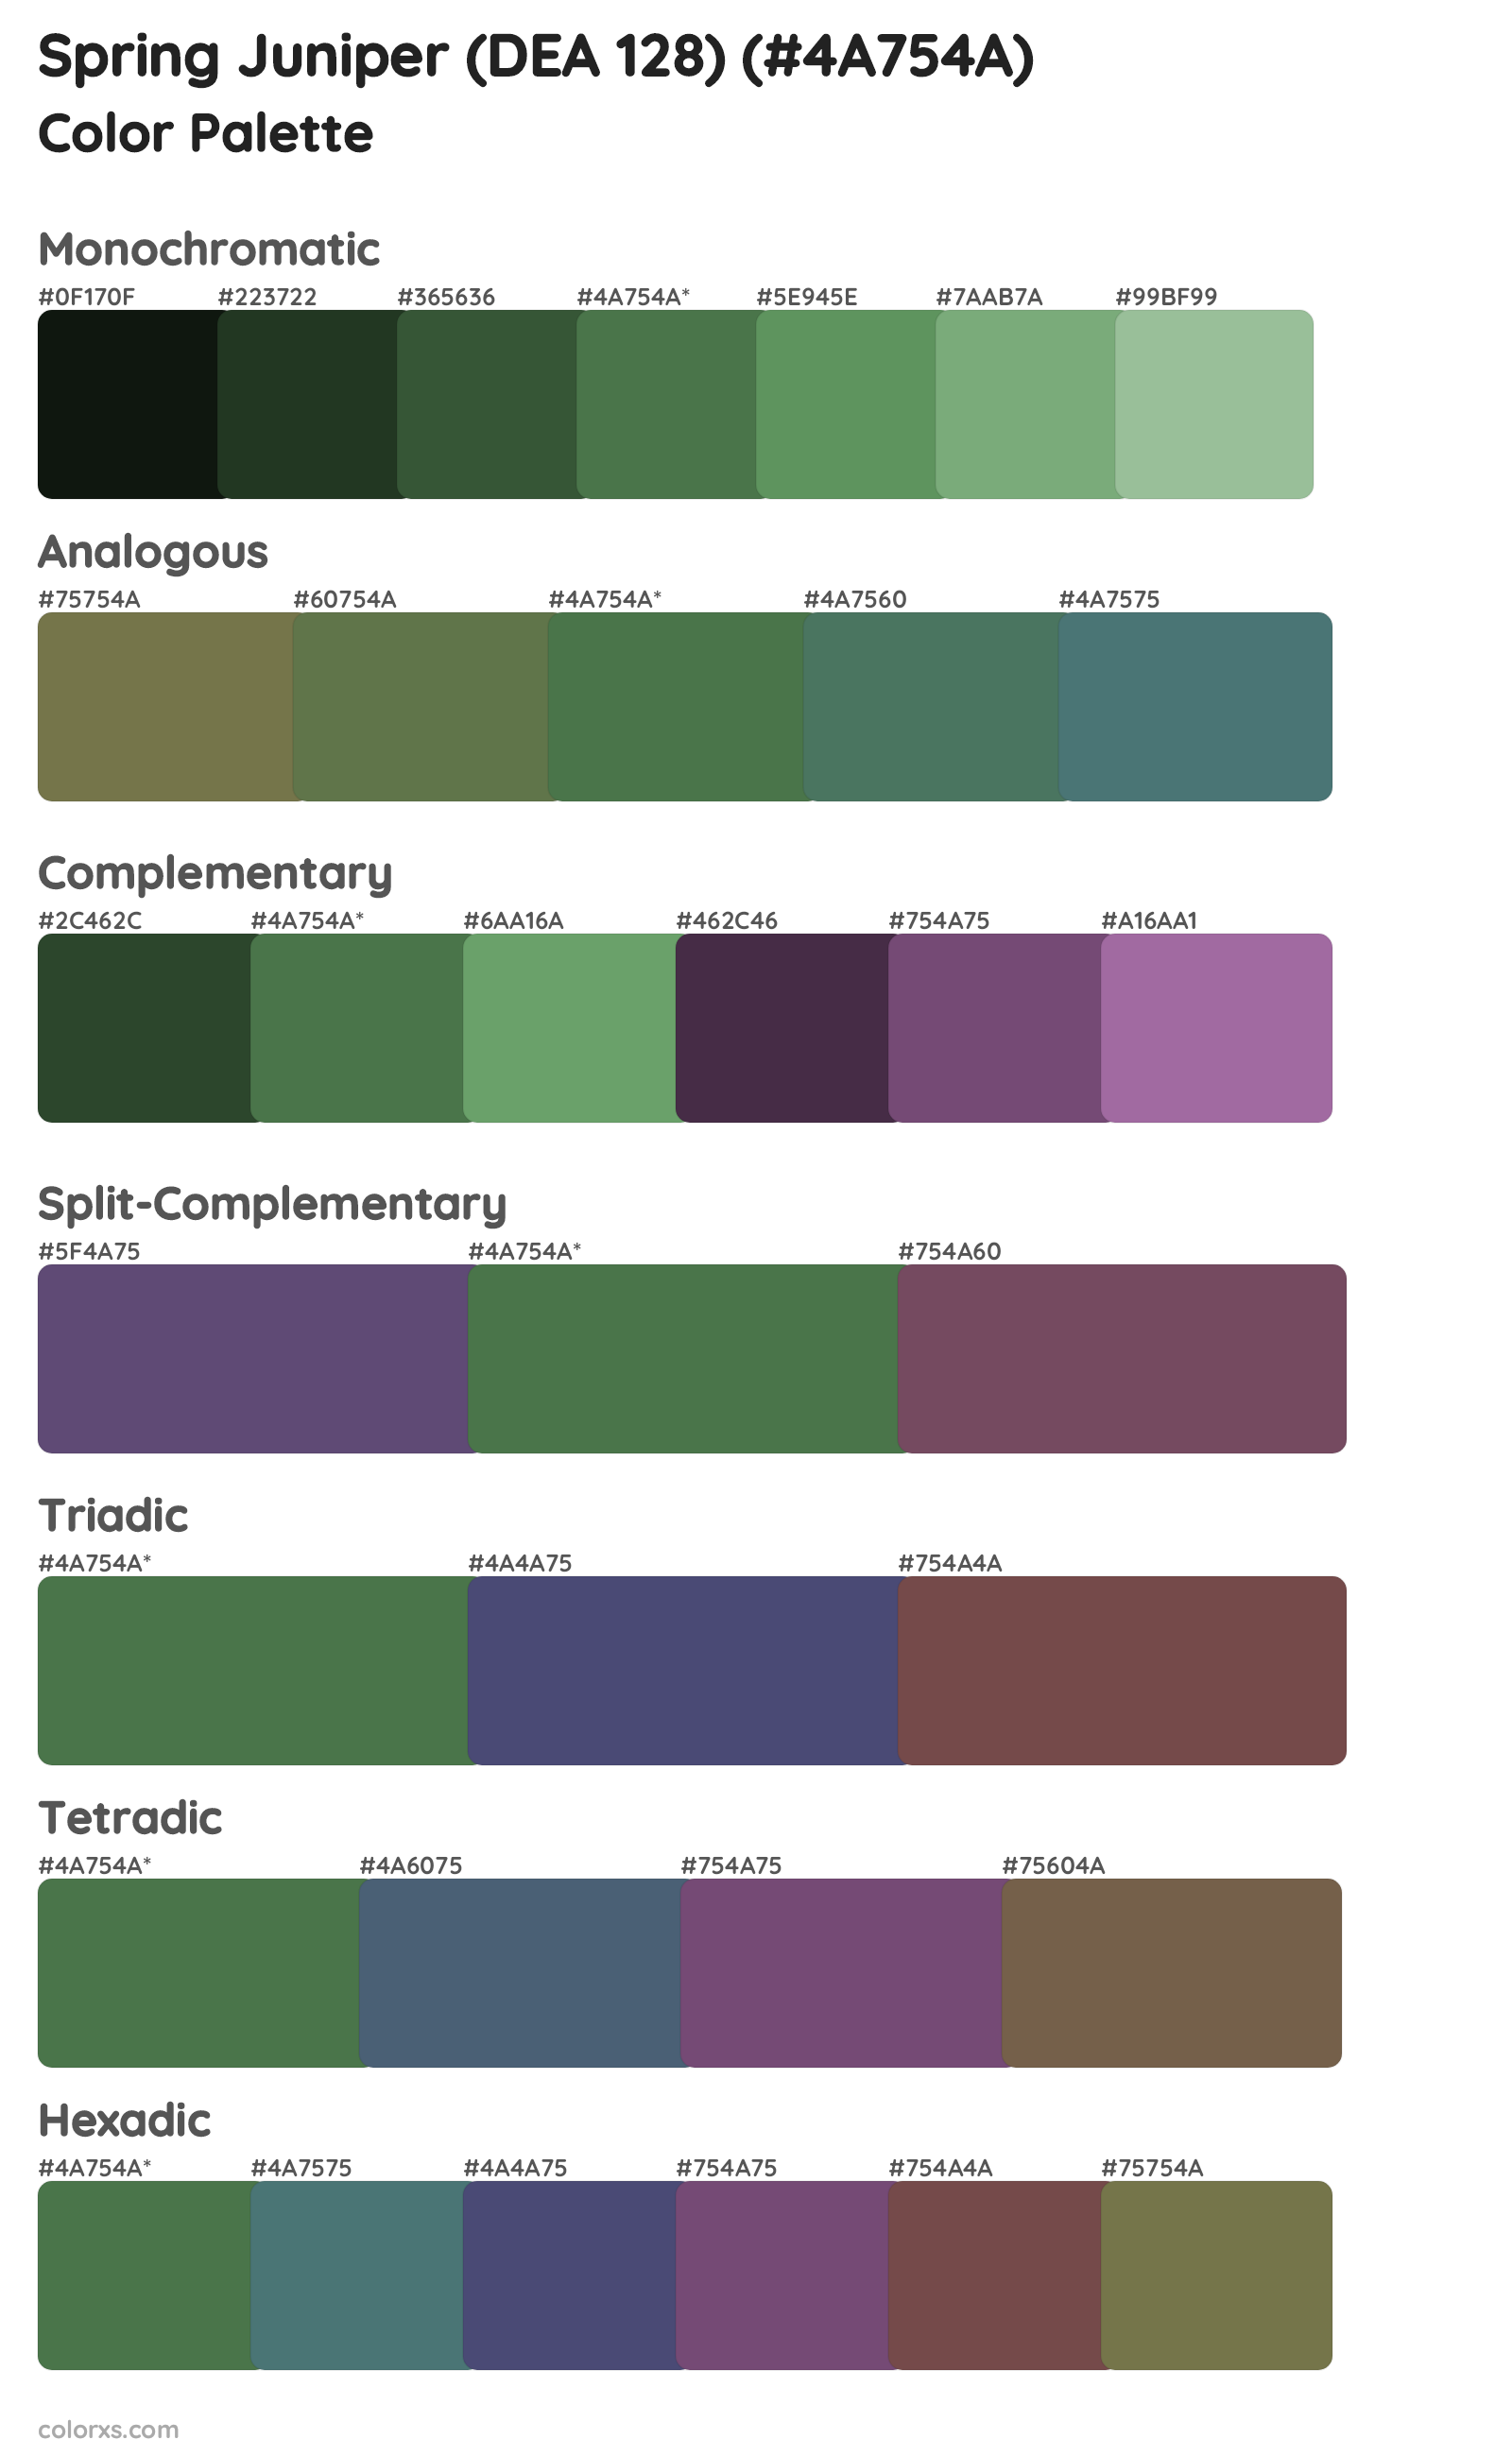 Spring Juniper (DEA 128) Color Scheme Palettes